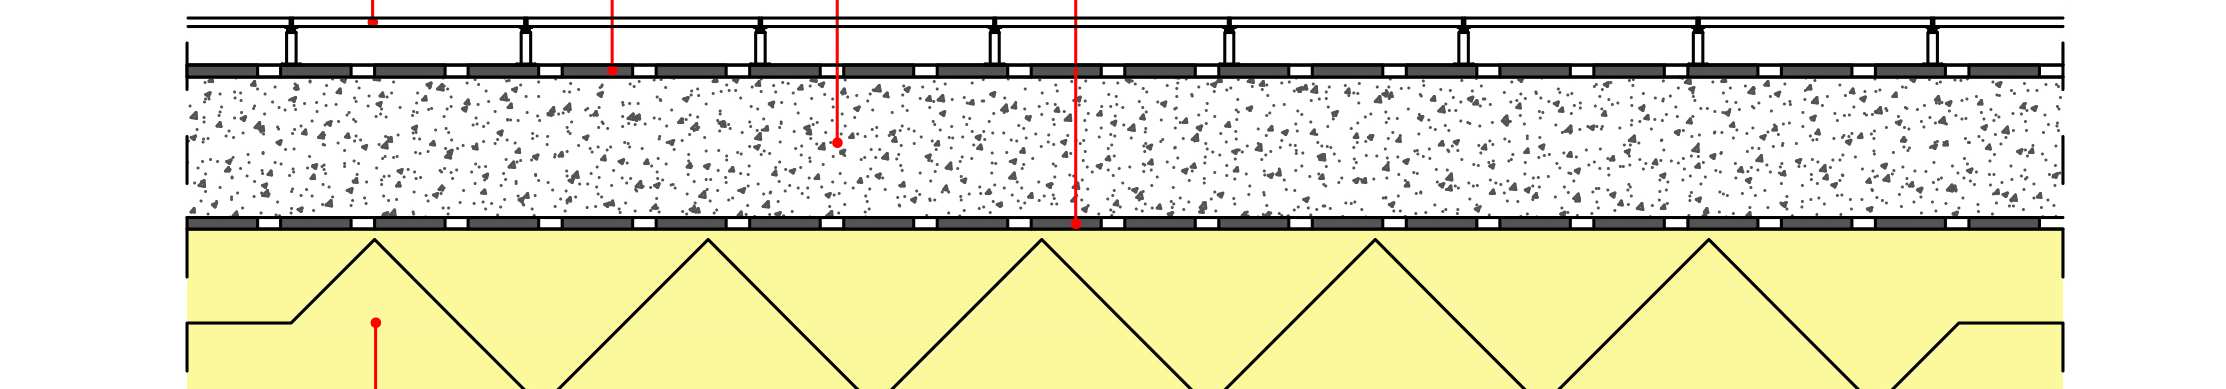 4.2.7. Solaio verso terrazzo (zona riscaldata) Il Solaio verso terrazzo (zona riscaldata) ha uno spessore complessivo di 39 cm.